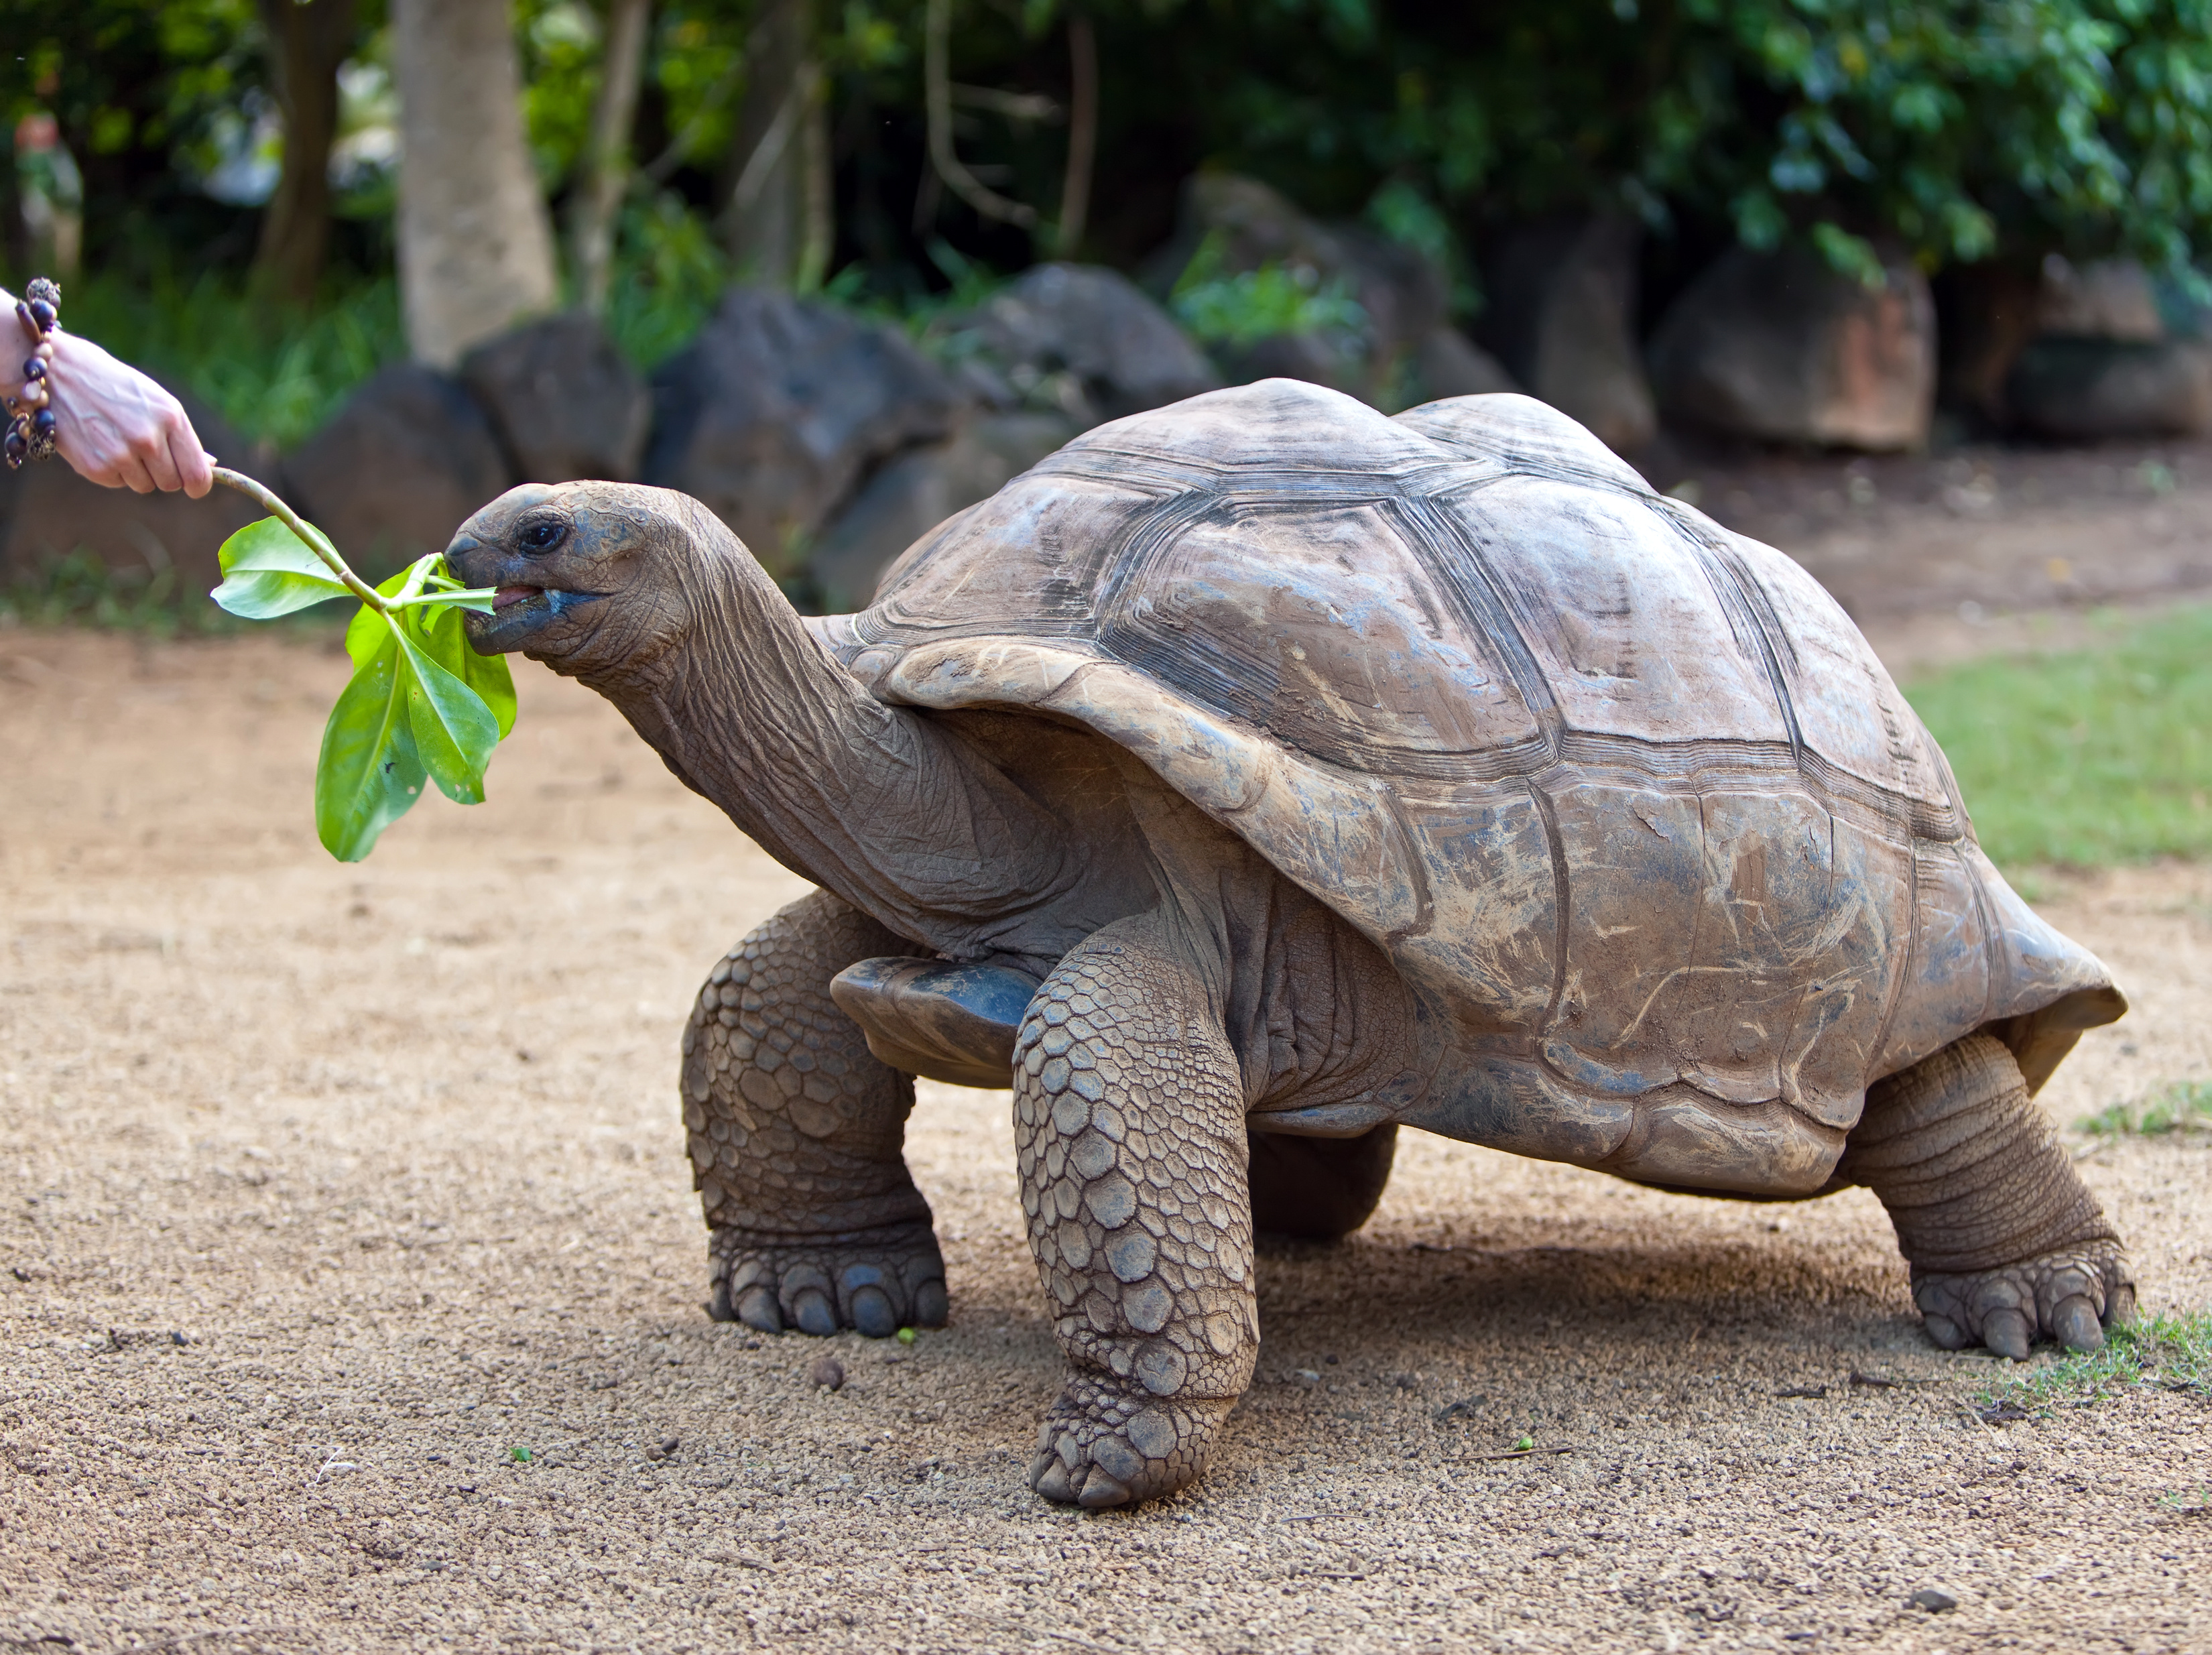 Turtle черепаха. Галапагосская гигантская черепаха. Абингдонская слоновая черепаха. Слоновая (Галапагосская) сухопутная черепаха. Исполинская сейшельская черепаха.